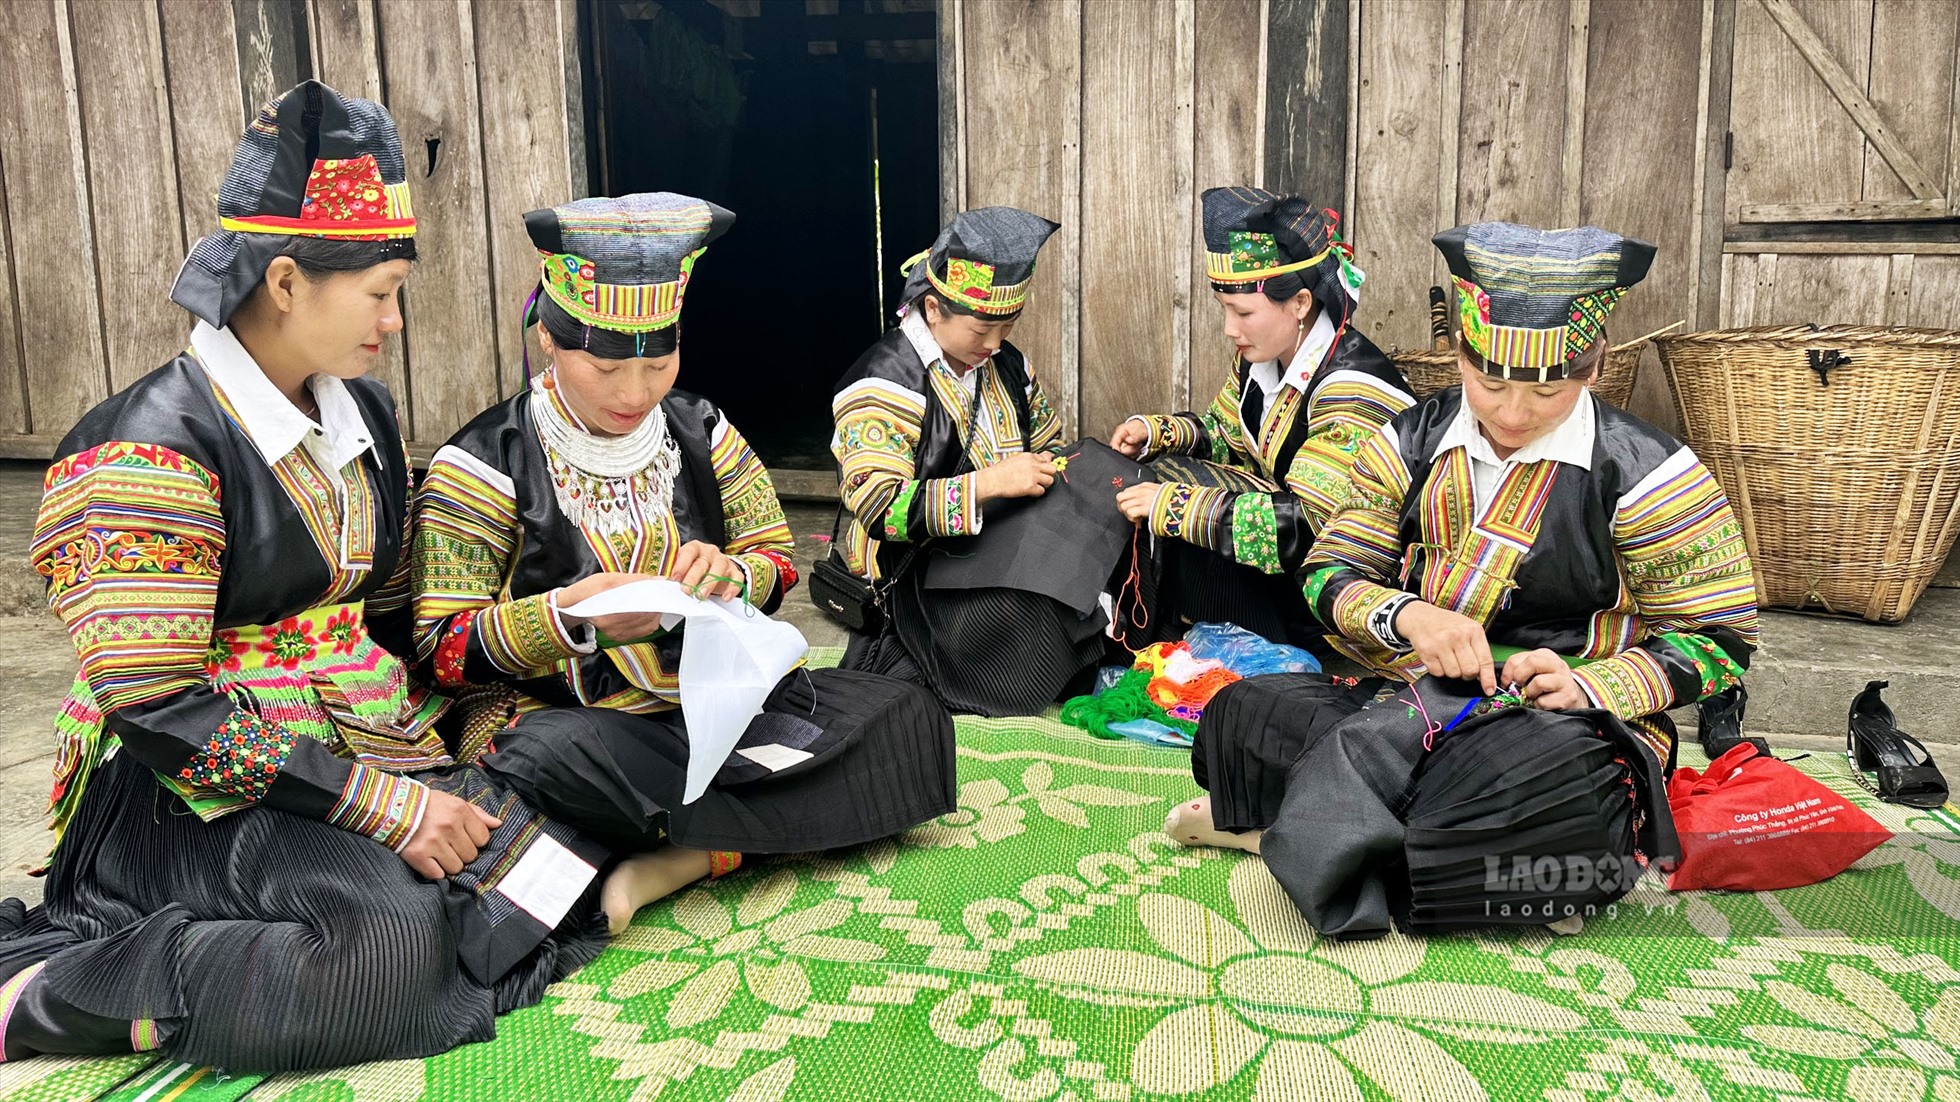 Người Mông đen ở Tuyên Quang không nhiều, tập trung chủ yếu ở thôn Tiên Tốc và thôn Chẩu Quân xã Bình An với khoảng trên 80 hộ sống quần cư, gắn bó và tạo thành phong tục, nét văn hóa độc đáo riêng.